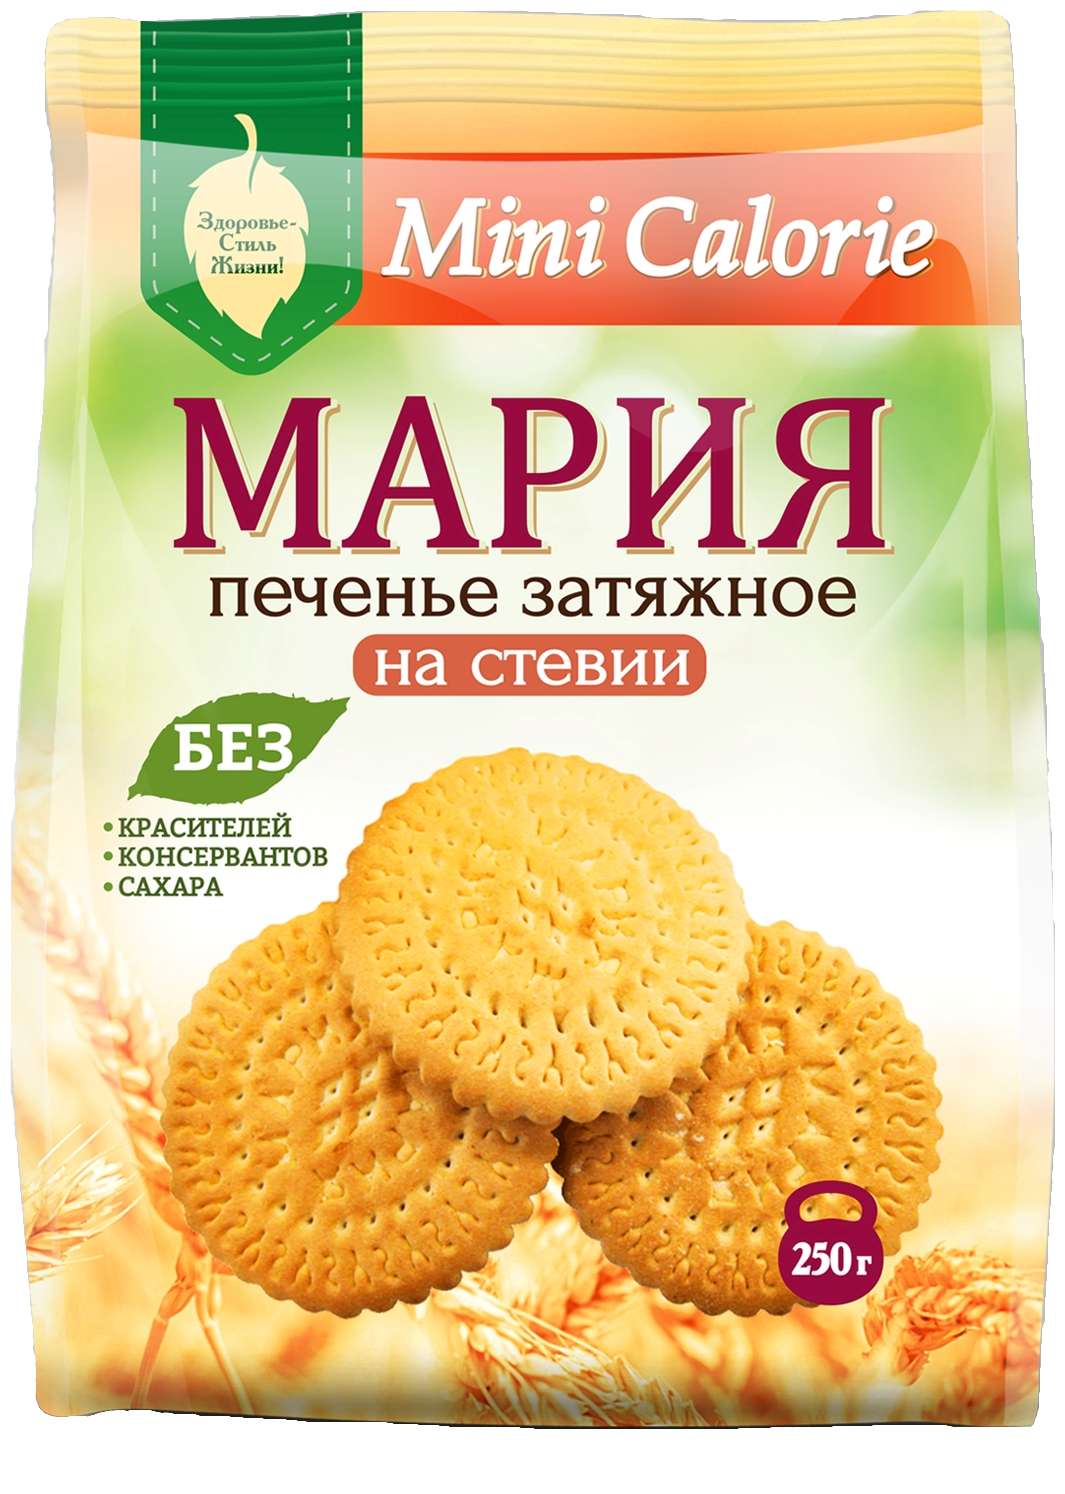 2 шт Печенье Затяжное Мария на Стевии Mini Calorie 250 гр